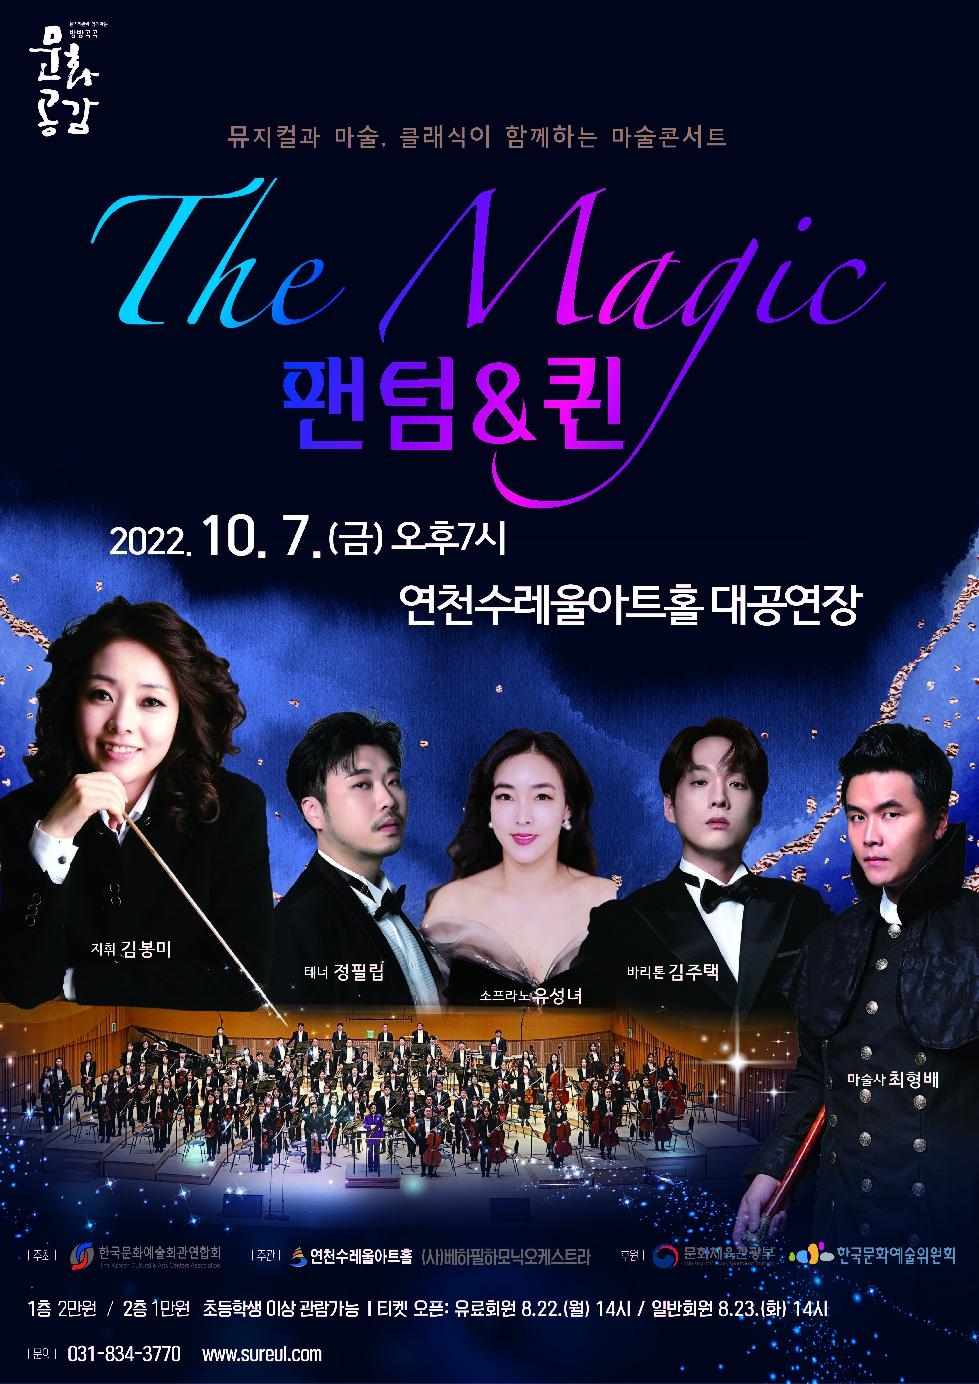 마술콘서트 ‘The Magic 팬텀&퀸’ 오는 7일 연천수레울아트